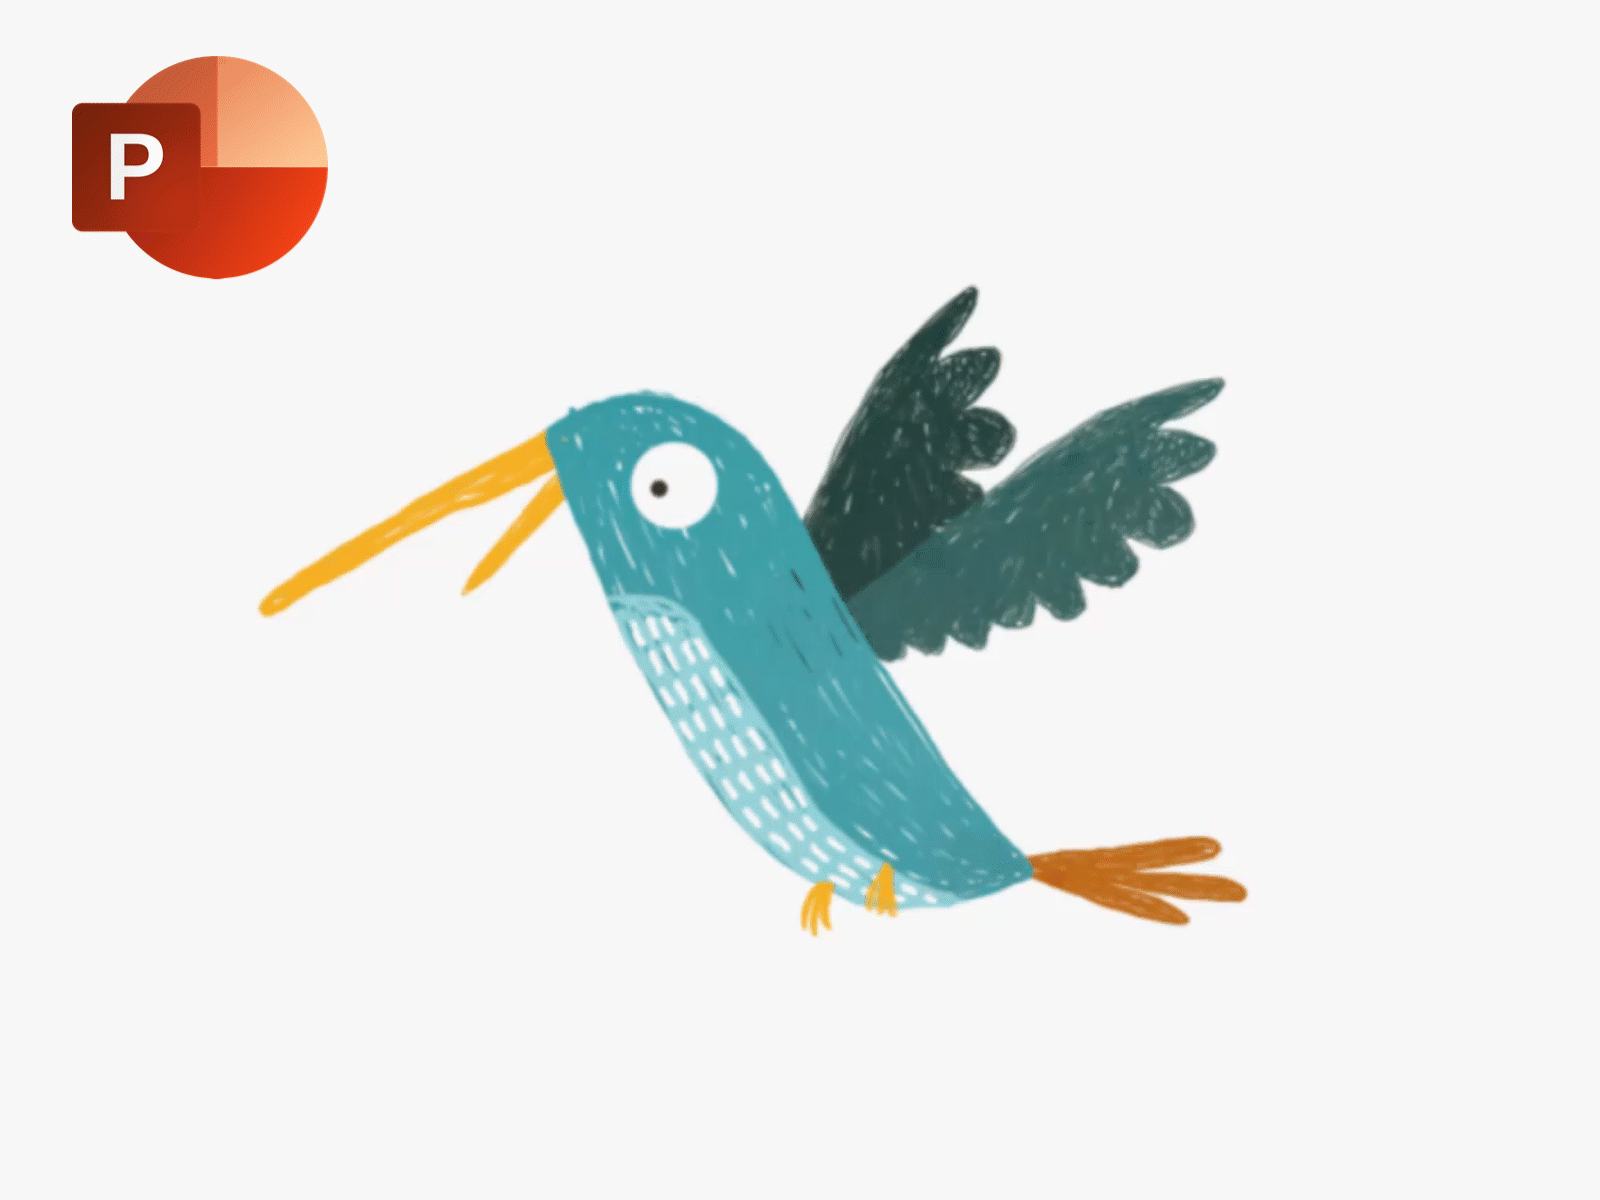 Humming Bird Animation in PowerPoint